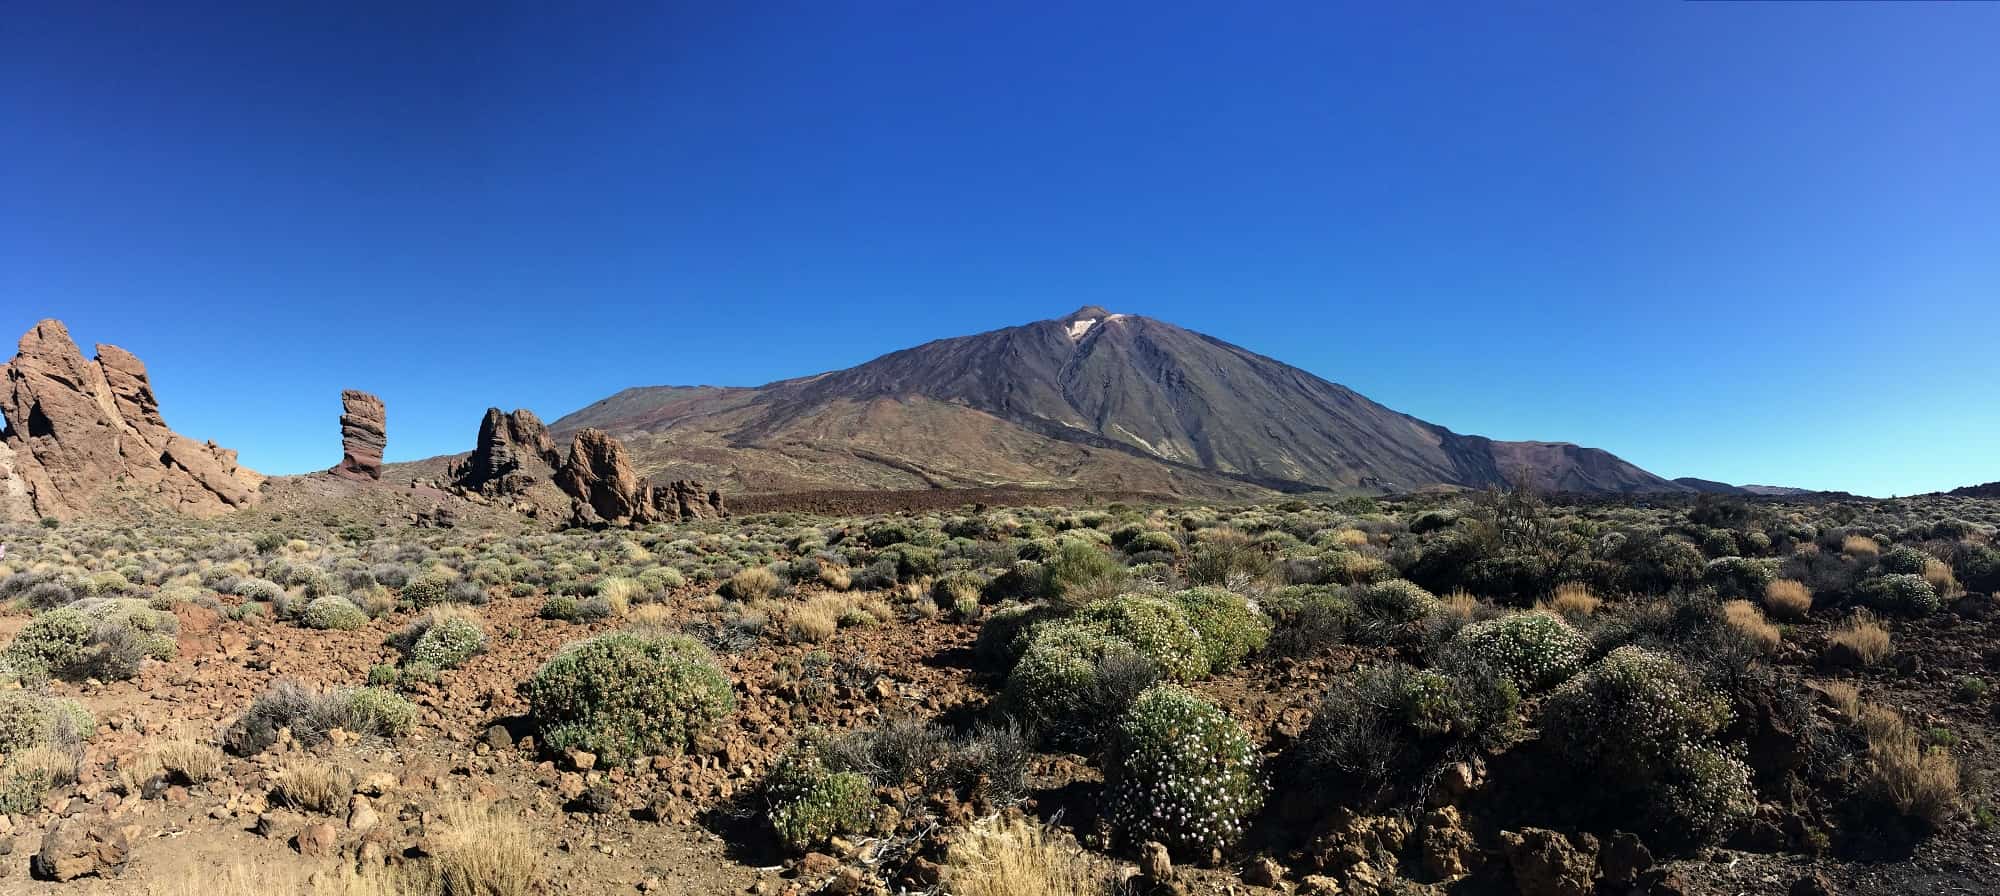 Tenerife Mt Teide